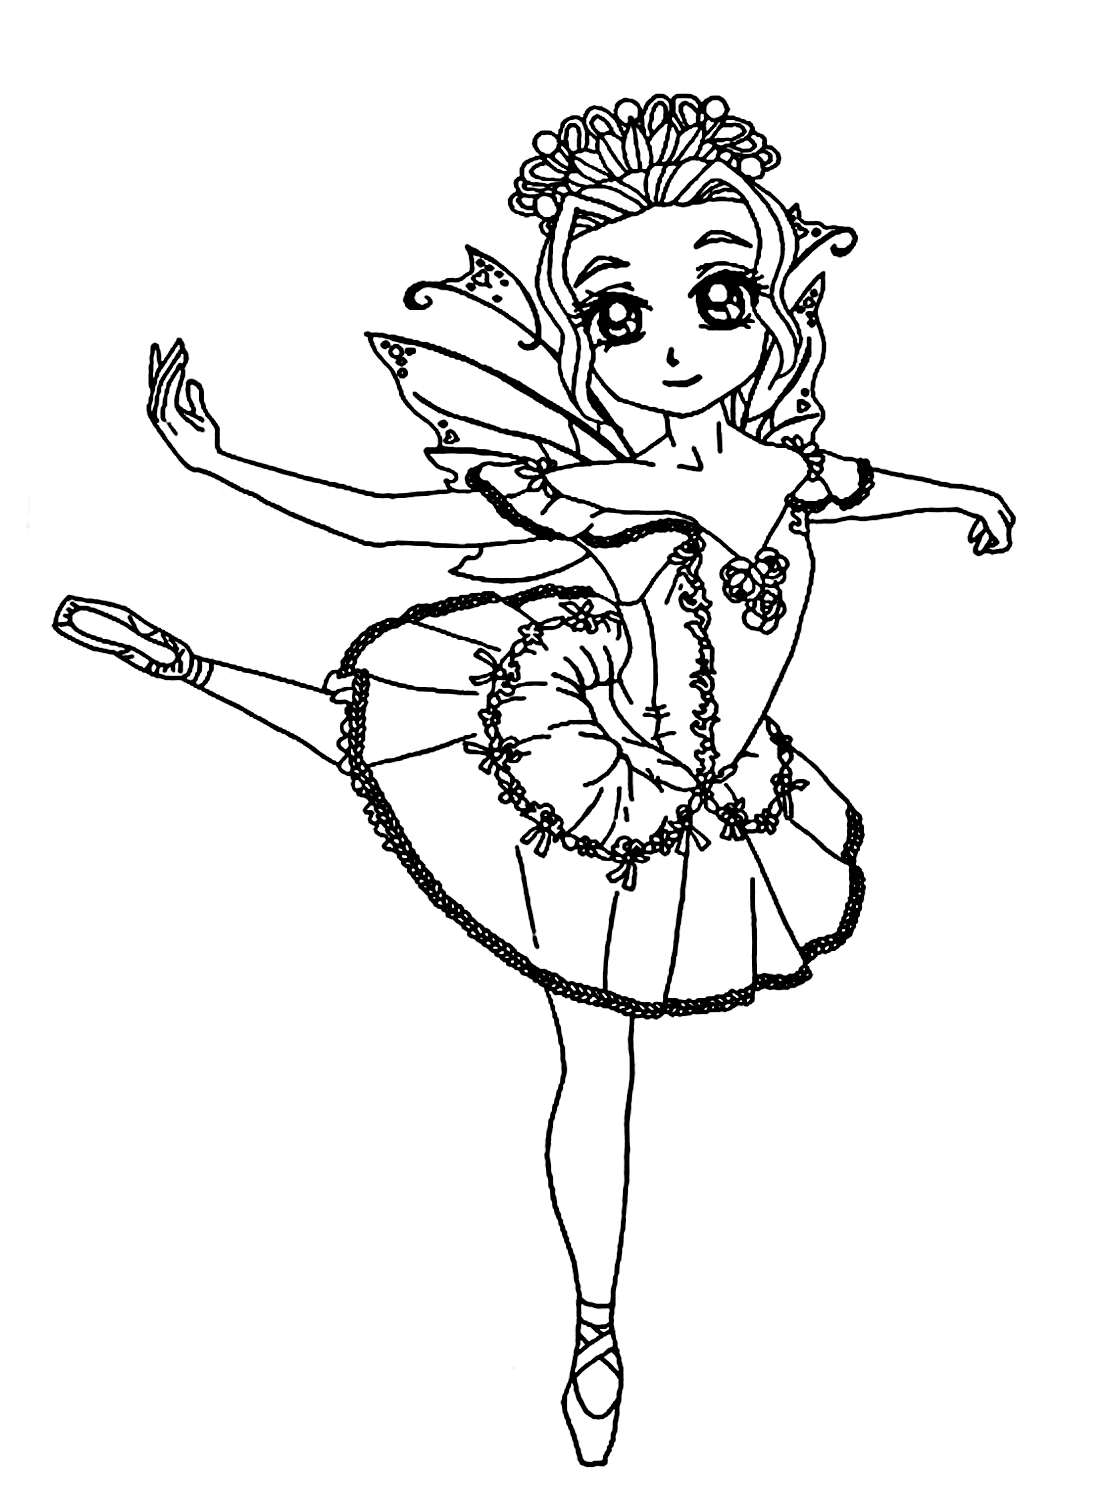 Una pequeña imagen de niña bailarina